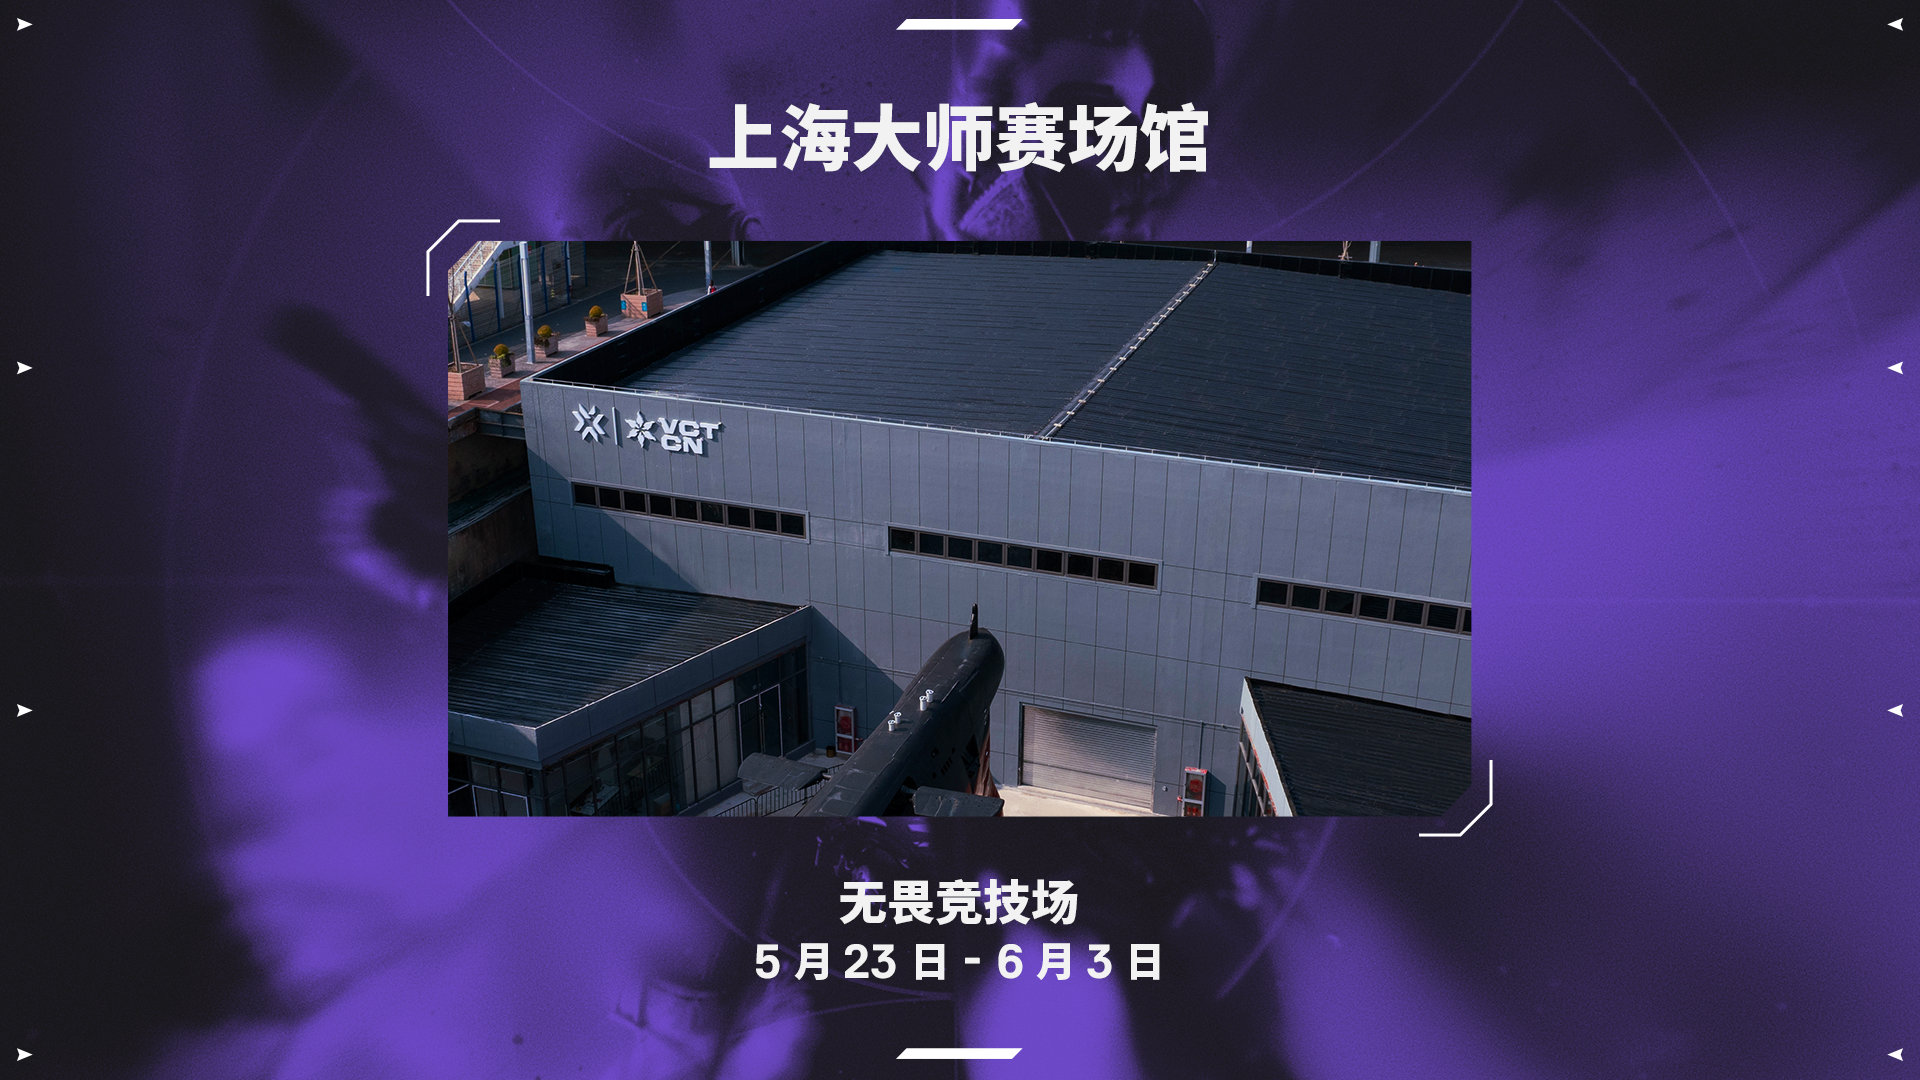 上海发布爆料上海大师赛第二阶段举办场地：最后三天将在梅奔举办